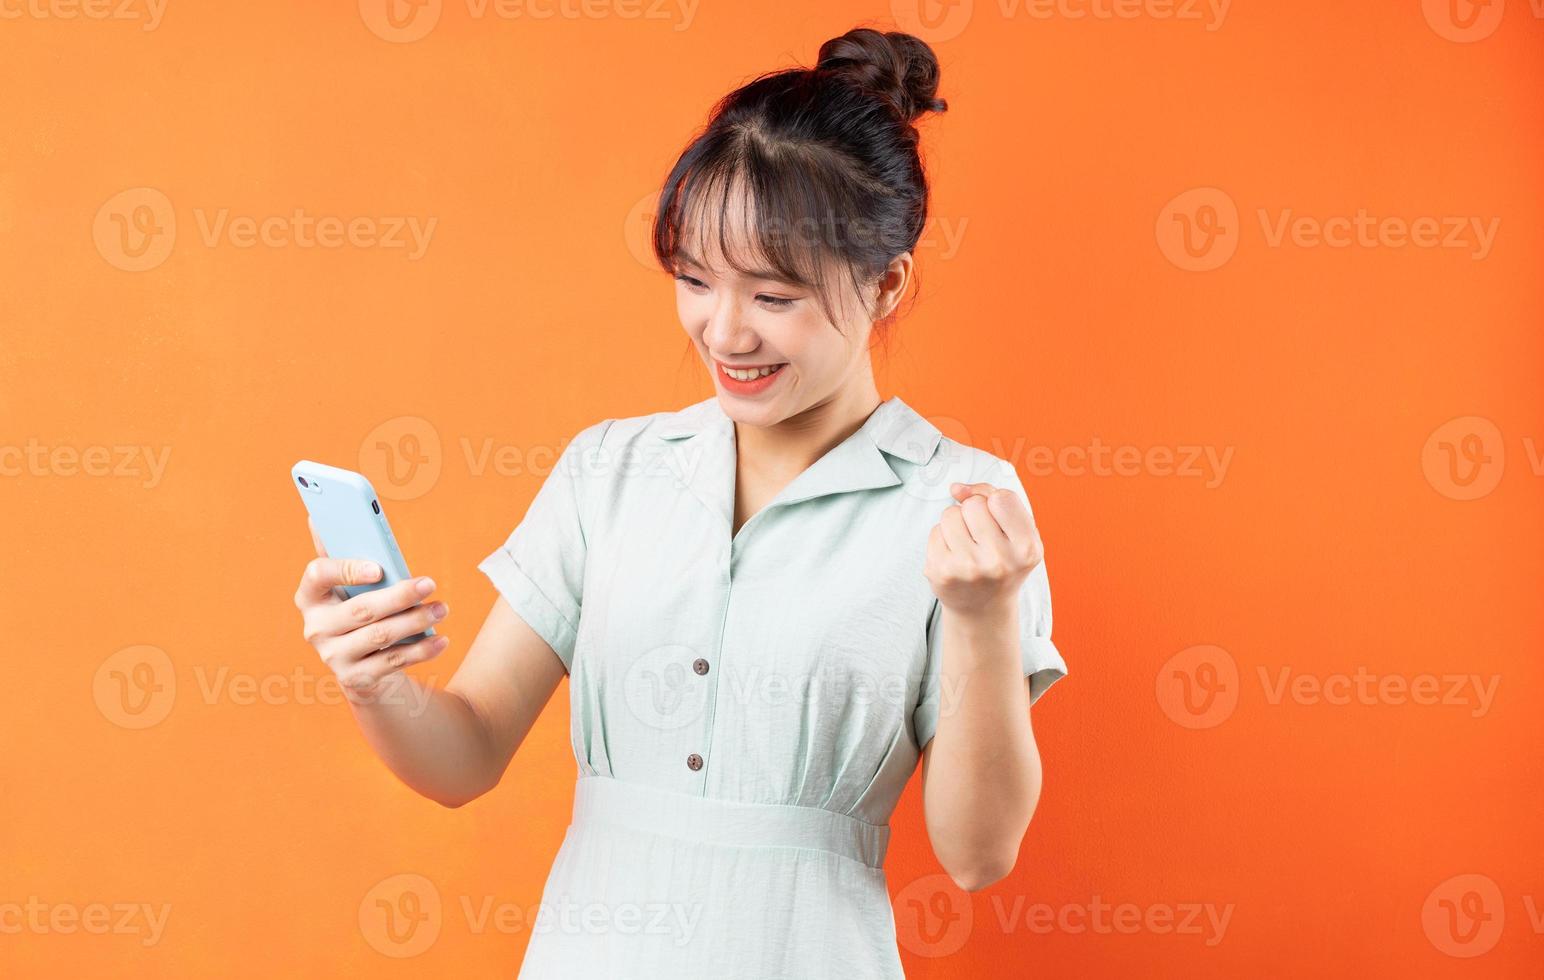 Portret van een jong meisje dat telefoon gebruikt en de overwinning viert, geïsoleerd op een oranje achtergrond foto